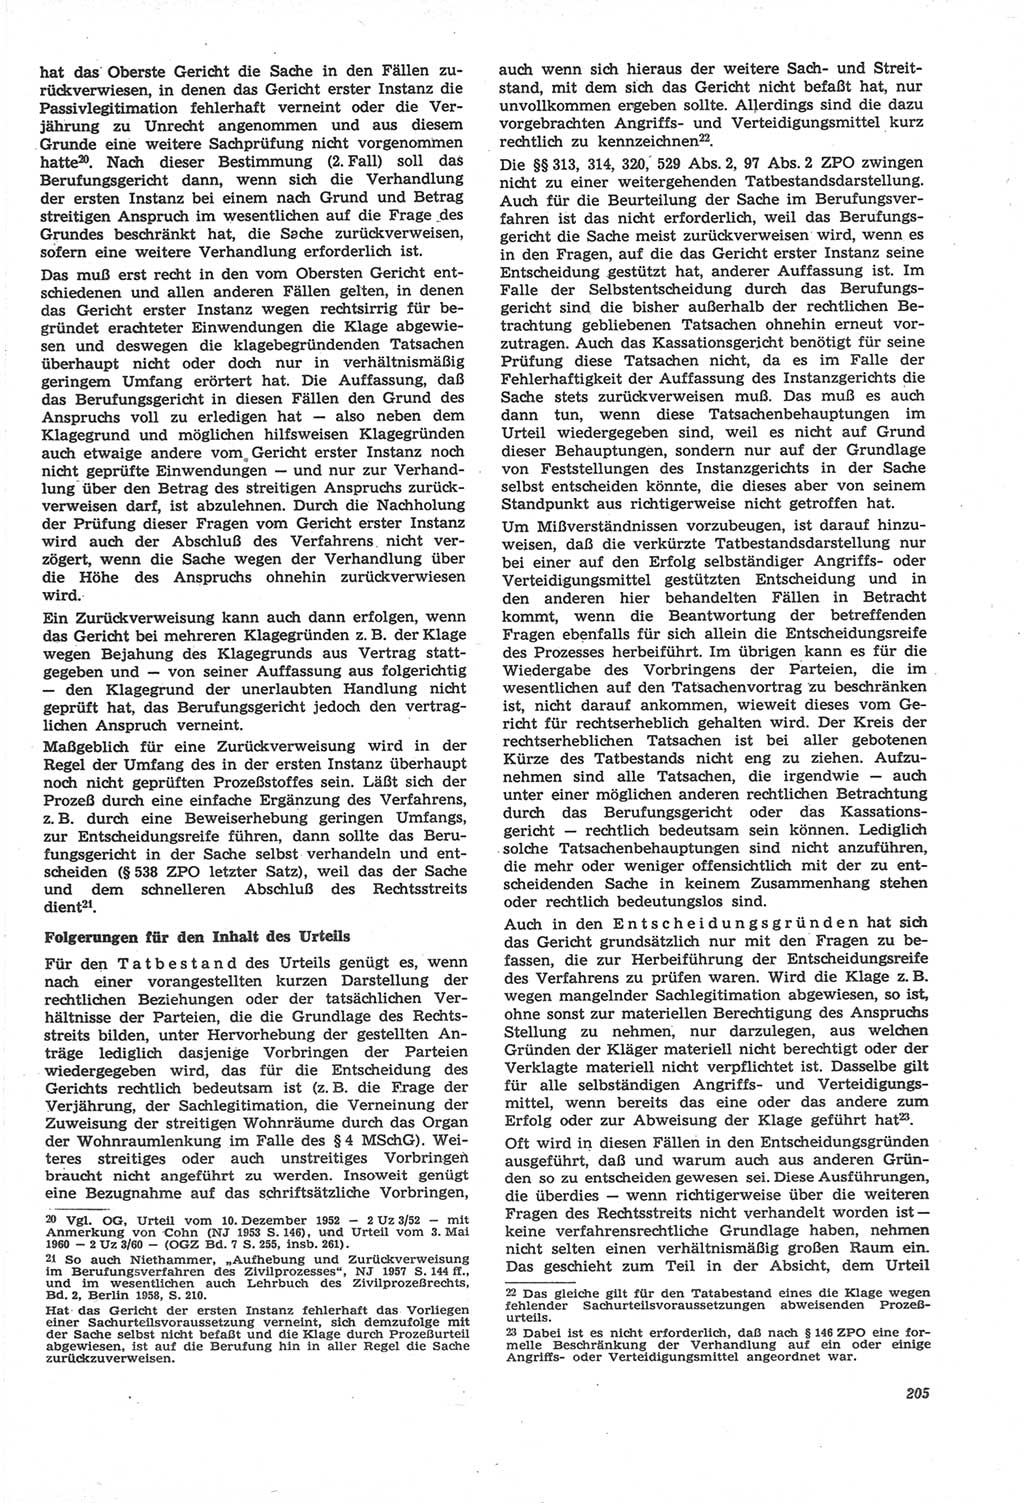 Neue Justiz (NJ), Zeitschrift für Recht und Rechtswissenschaft [Deutsche Demokratische Republik (DDR)], 22. Jahrgang 1968, Seite 205 (NJ DDR 1968, S. 205)